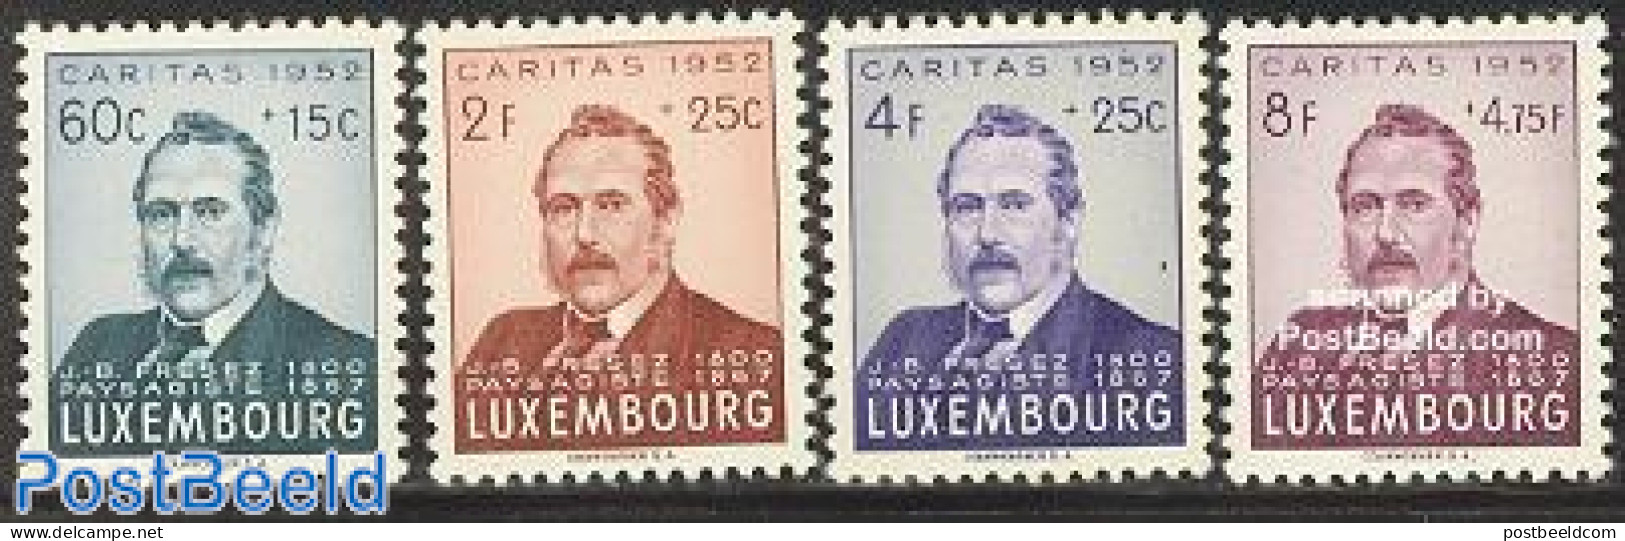 Luxemburg 1952 Caritas, J.B. Fresez 4v, Unused (hinged), Art - Self Portraits - Unused Stamps